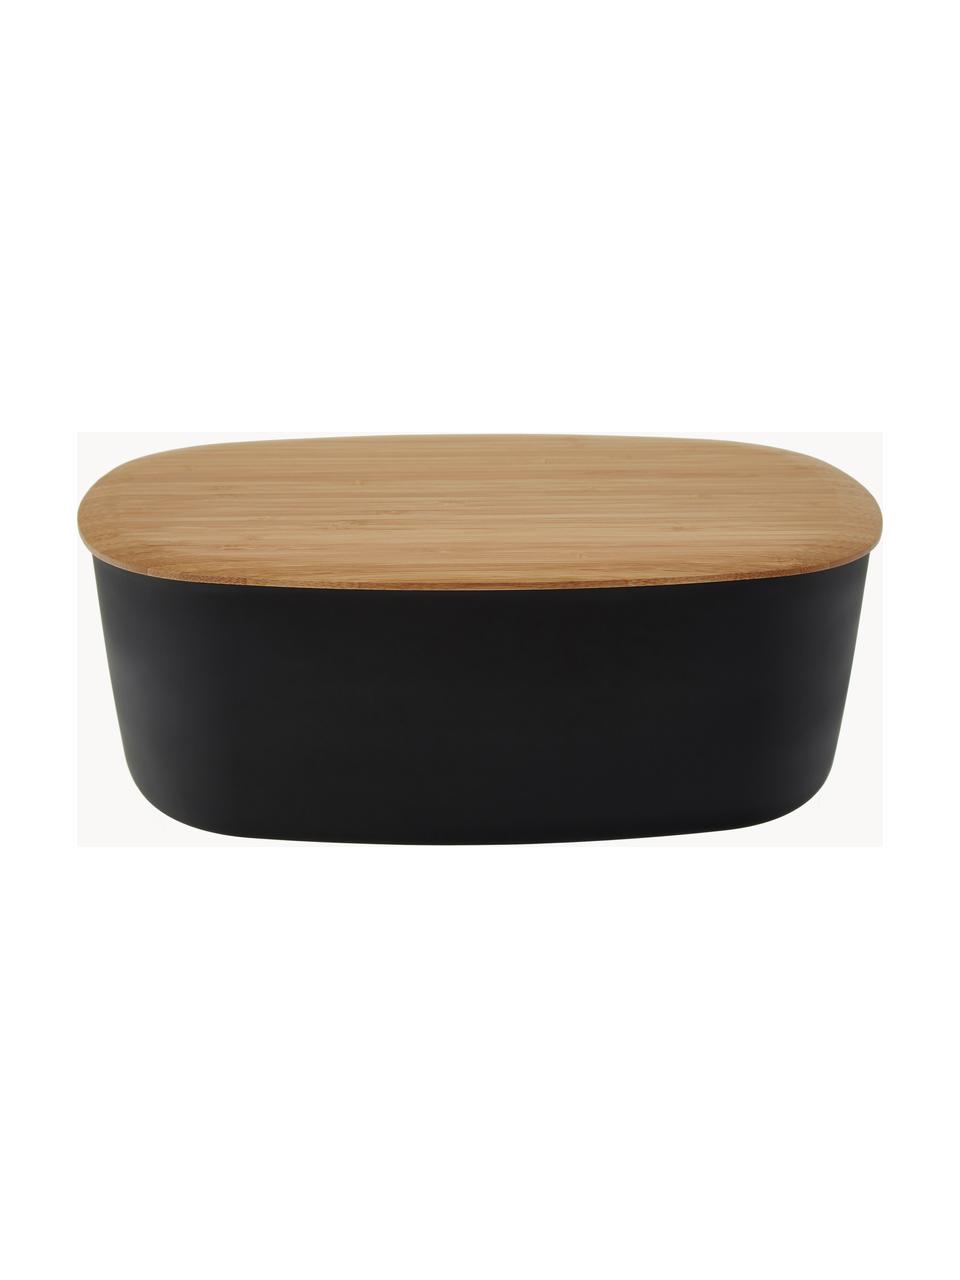 Chlebník s bambusovým víkem Box-It, Černá, světlé dřevo, Š 35 cm, V 12 cm